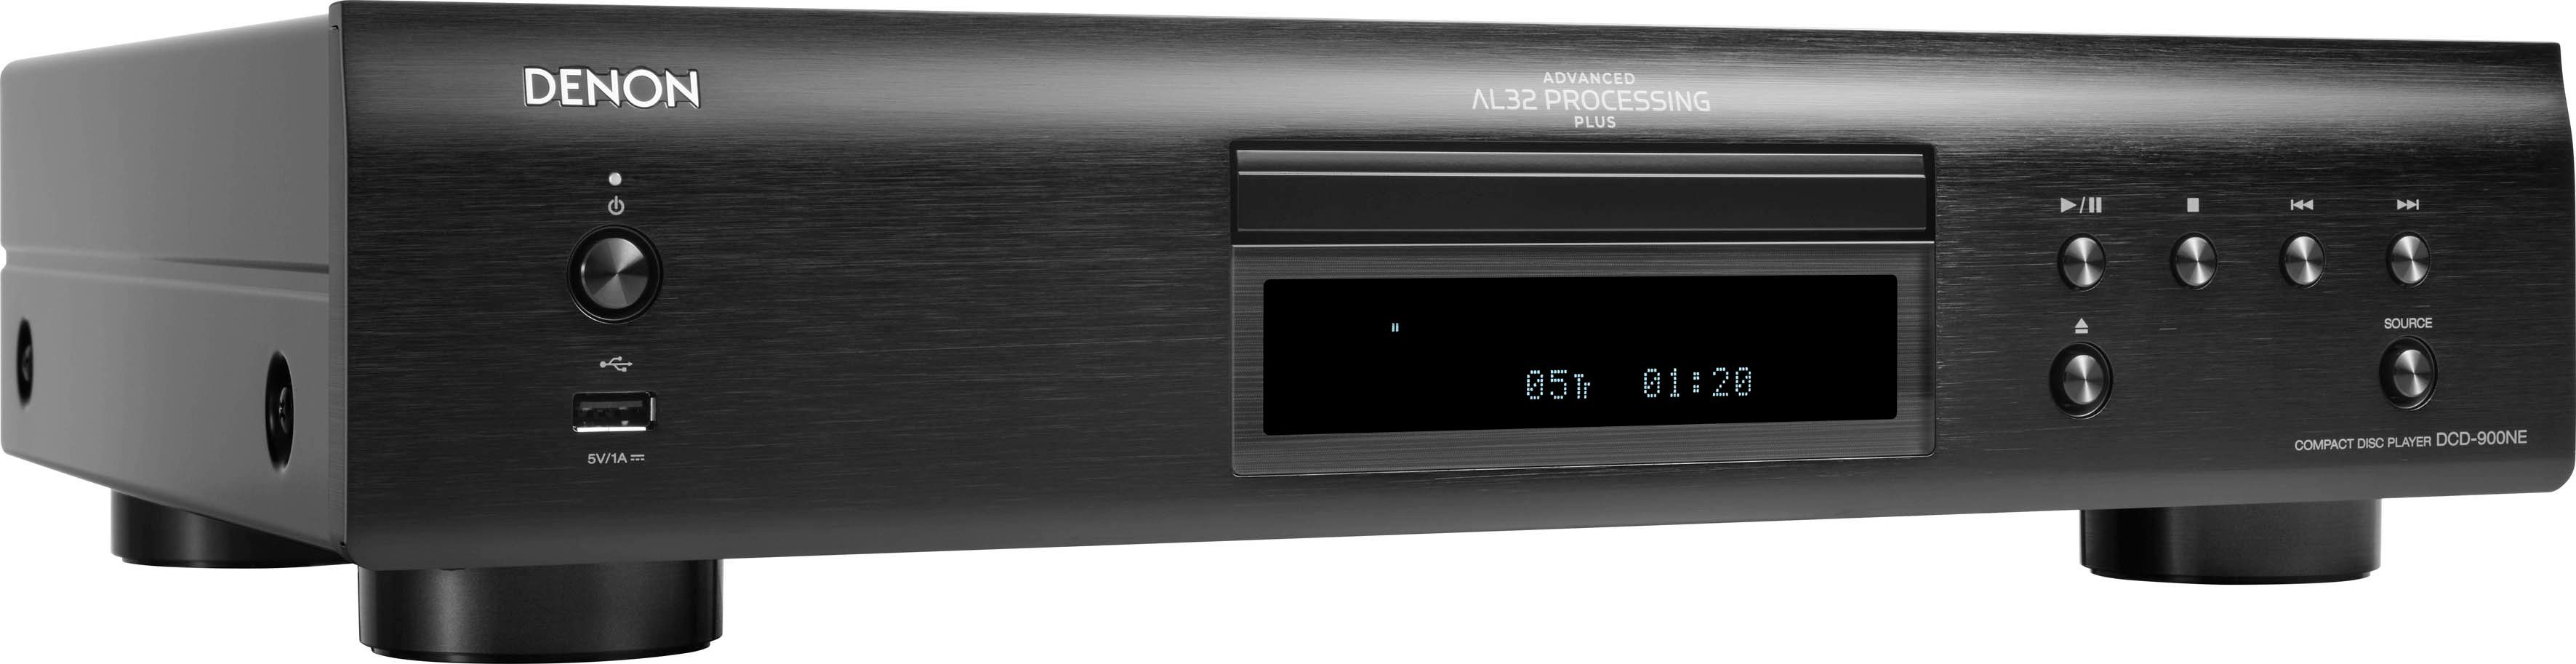 Denon DCD-900NE CD-Player schwarz (USB-Audiowiedergabe)